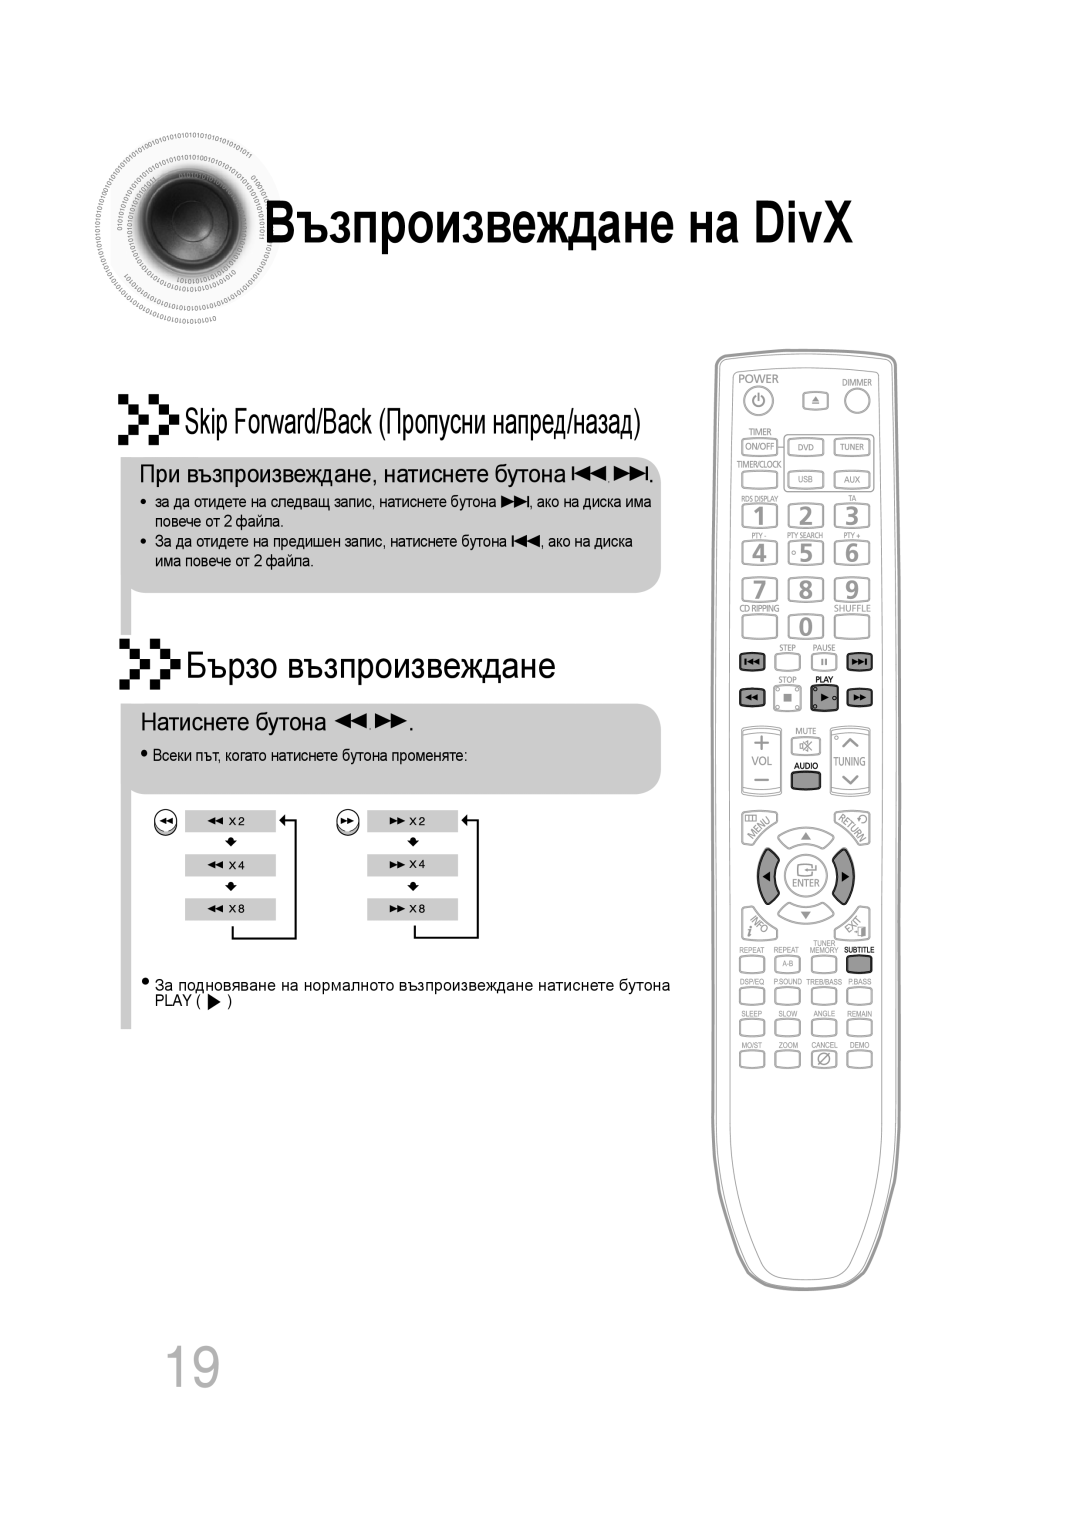 Samsung MM-C330D/EDC manual Възпроизвежданена DivX, Skip Forward/Back Пропусни напред/назад, Бързо възпроизвеждане 